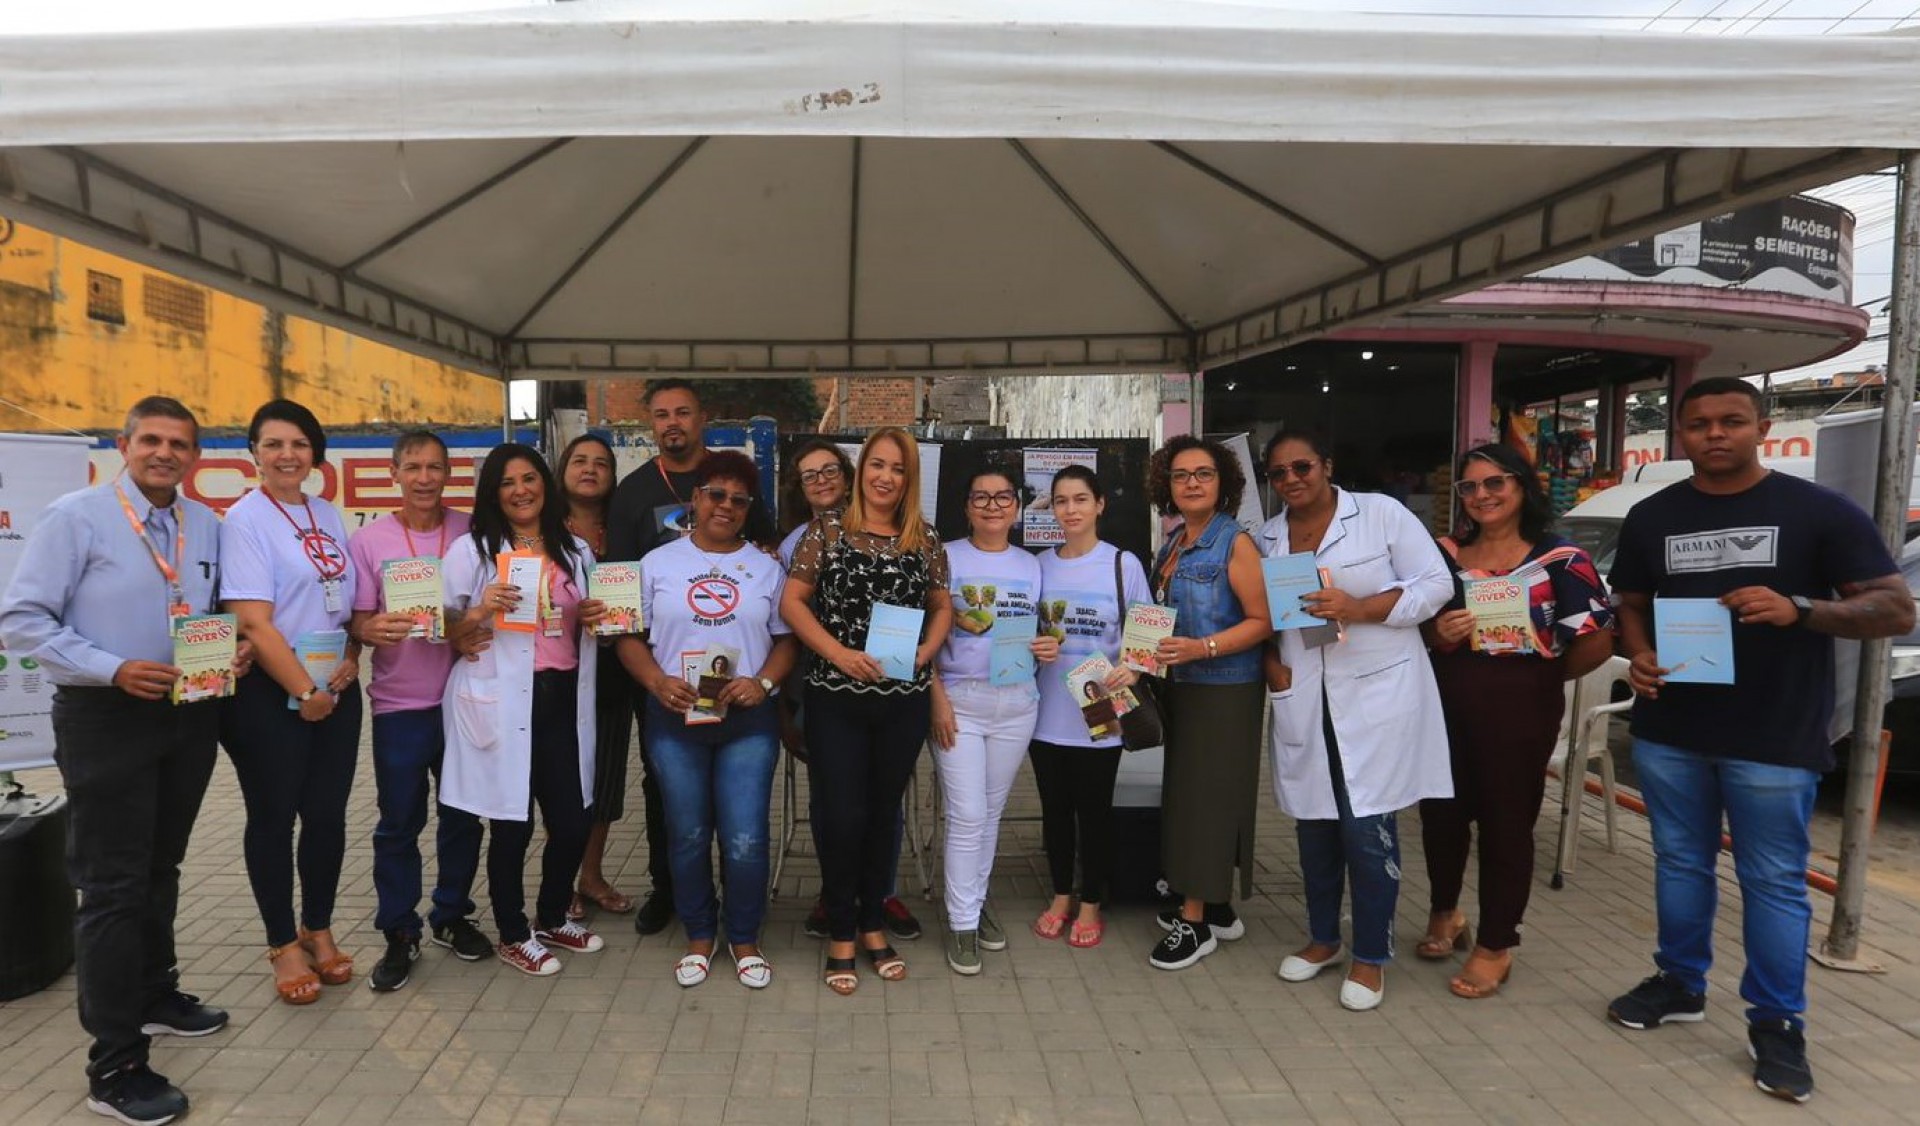 Equipe da Secretaria Municipal de Saúde fez campanha educativa na Praça de Areia Branca sobre o tabagismo - Rafael Barreto / PMBR